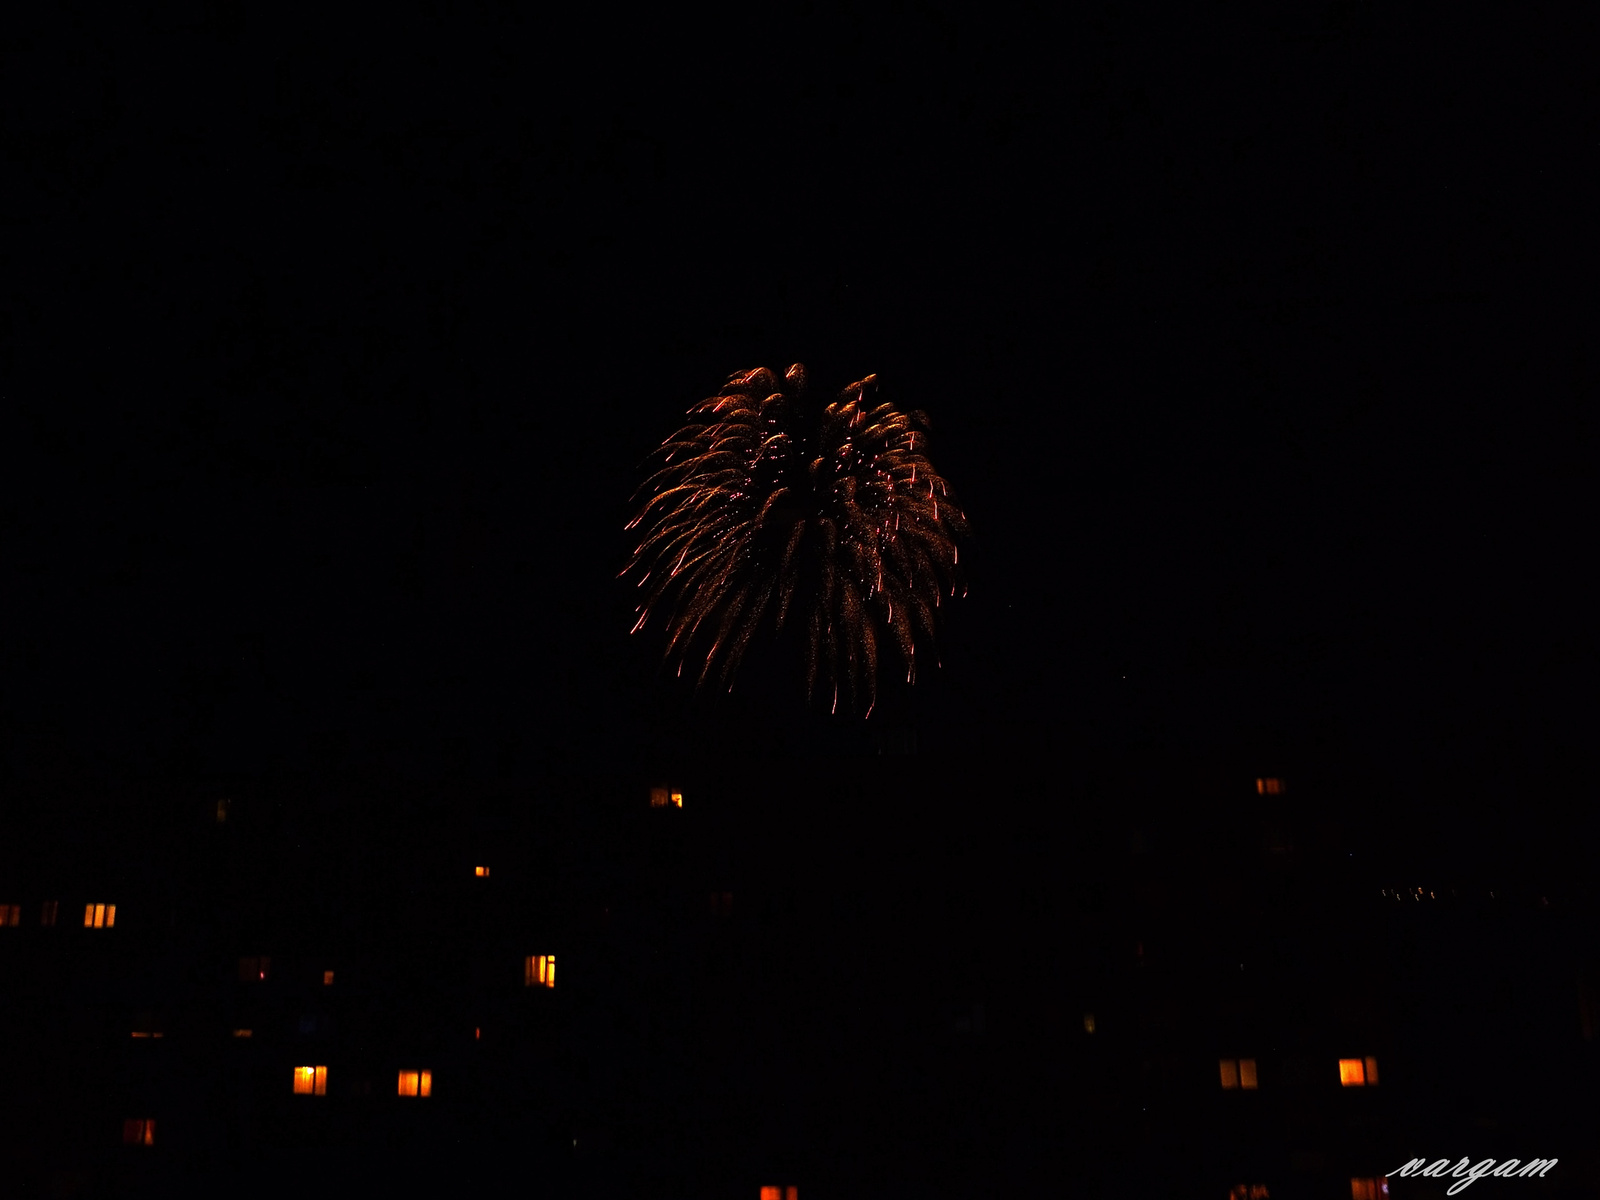 Tűzijáték 2014.aug.20.-án Tatabányán